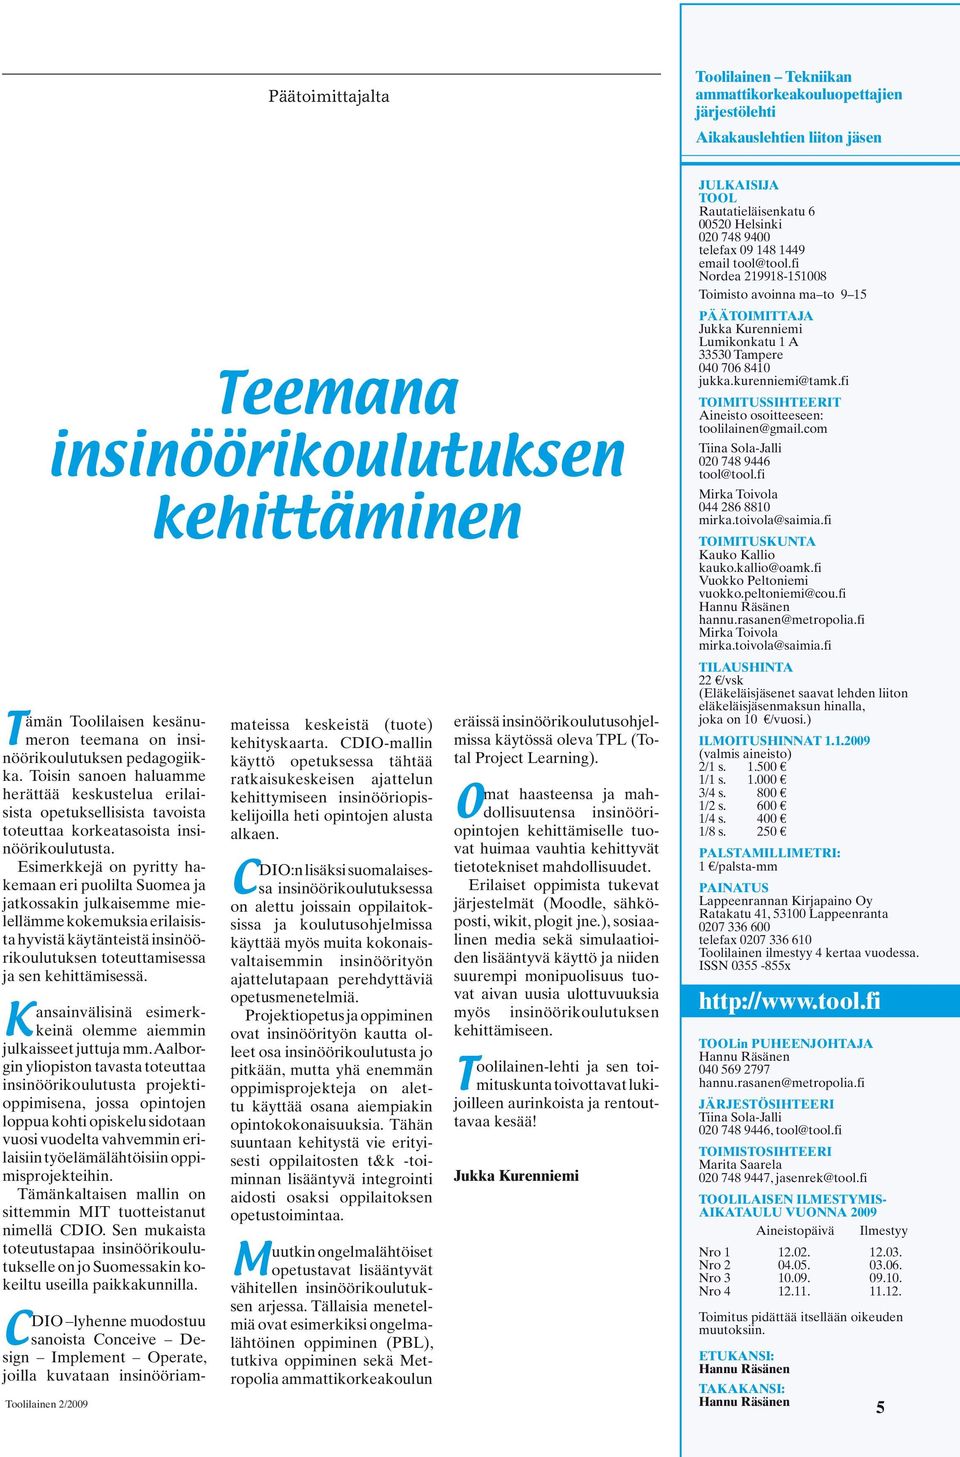 Esimerkkejä on pyritty hakemaan eri puolilta Suomea ja jatkossakin julkaisemme mielellämme kokemuksia erilaisista hyvistä käytänteistä insinöörikoulutuksen toteuttamisessa ja sen kehittämisessä.